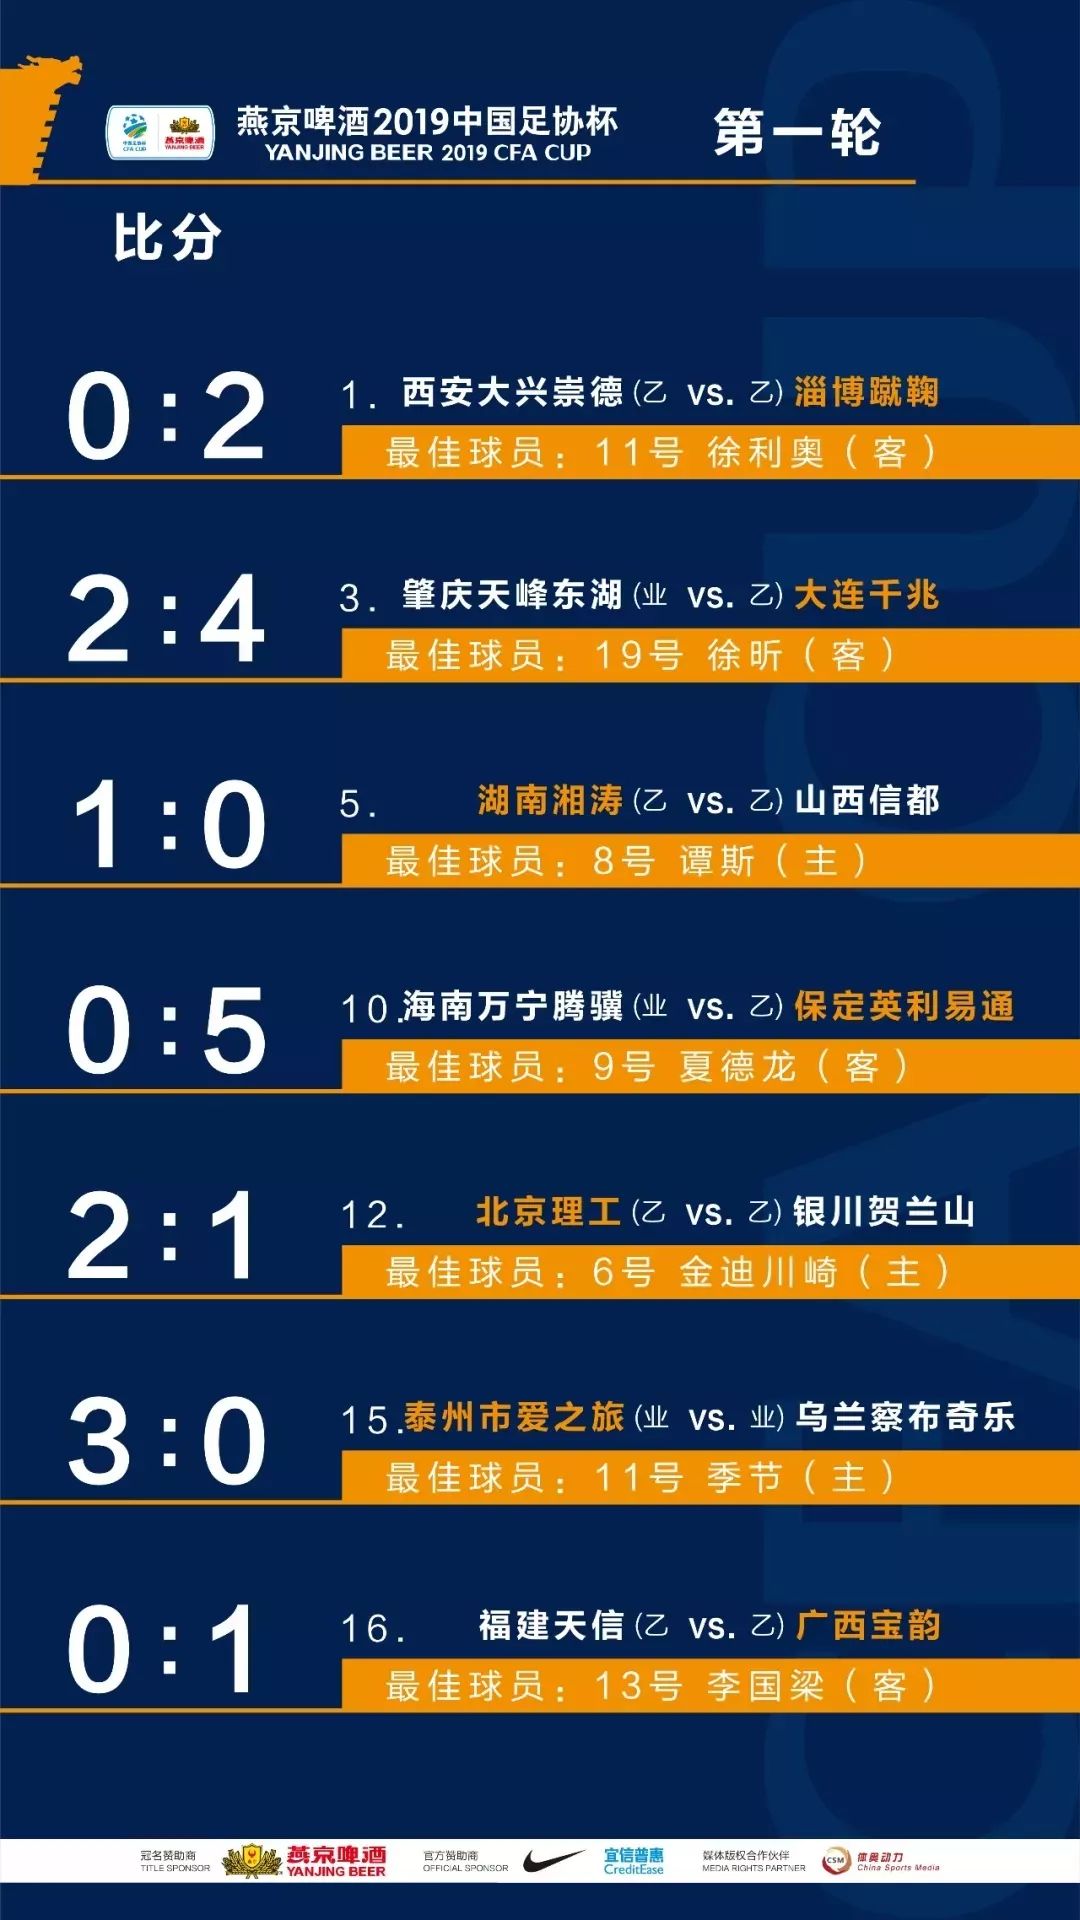 【赛事成绩】2019赛季中国足球协会杯赛第一